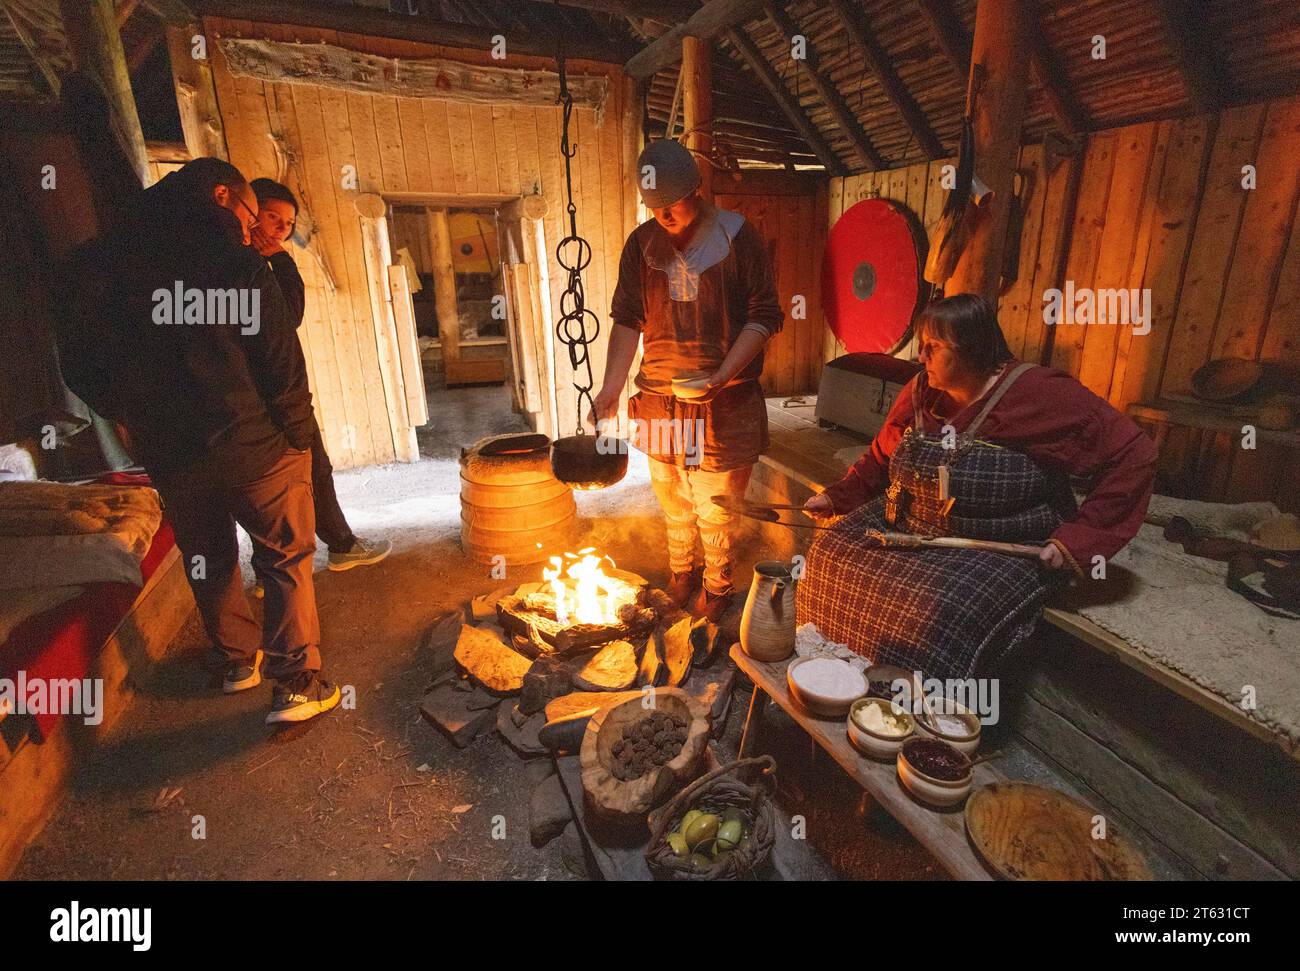 L'anse aux Meadows site UNESCO de l'ancienne colonie nordique/viking, Terre-Neuve Canada. Les touristes surveillent la reconstruction intérieure des installations de cuisine Banque D'Images